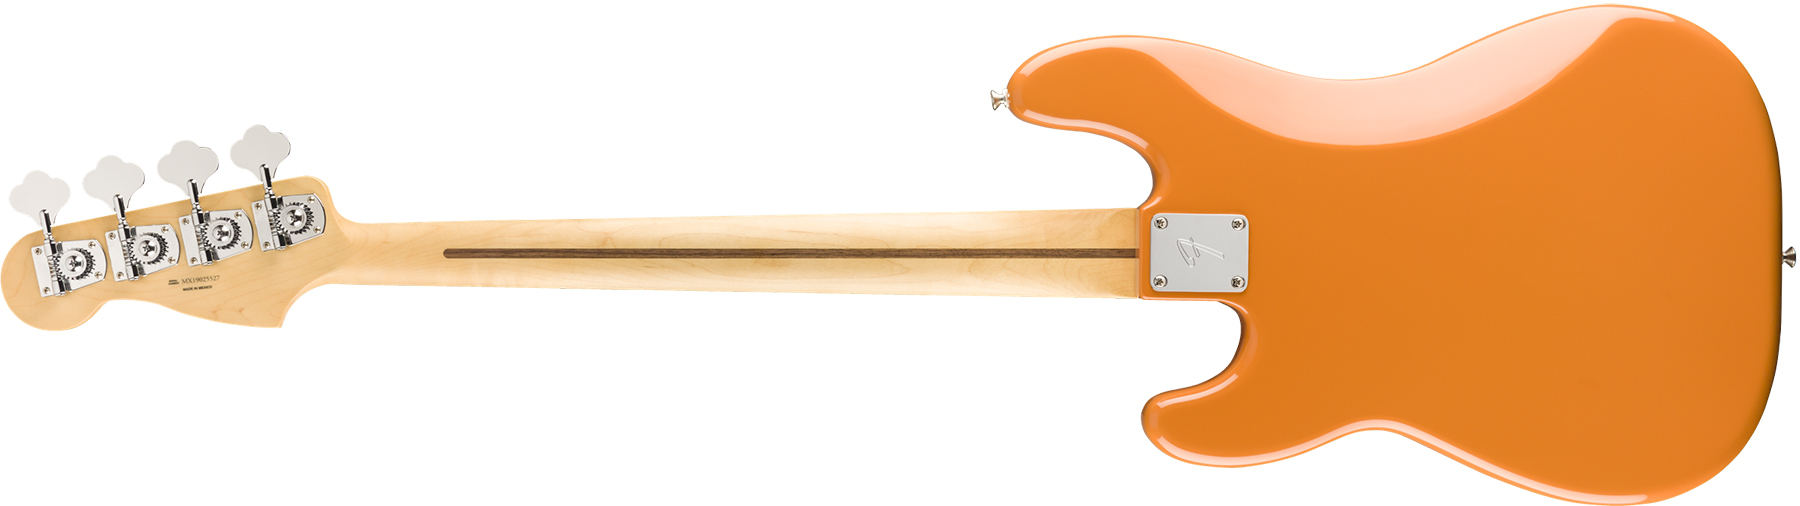 Fender Precision Bass Player Mex Pf - Capri Orange - Basse Électrique Solid Body - Variation 1